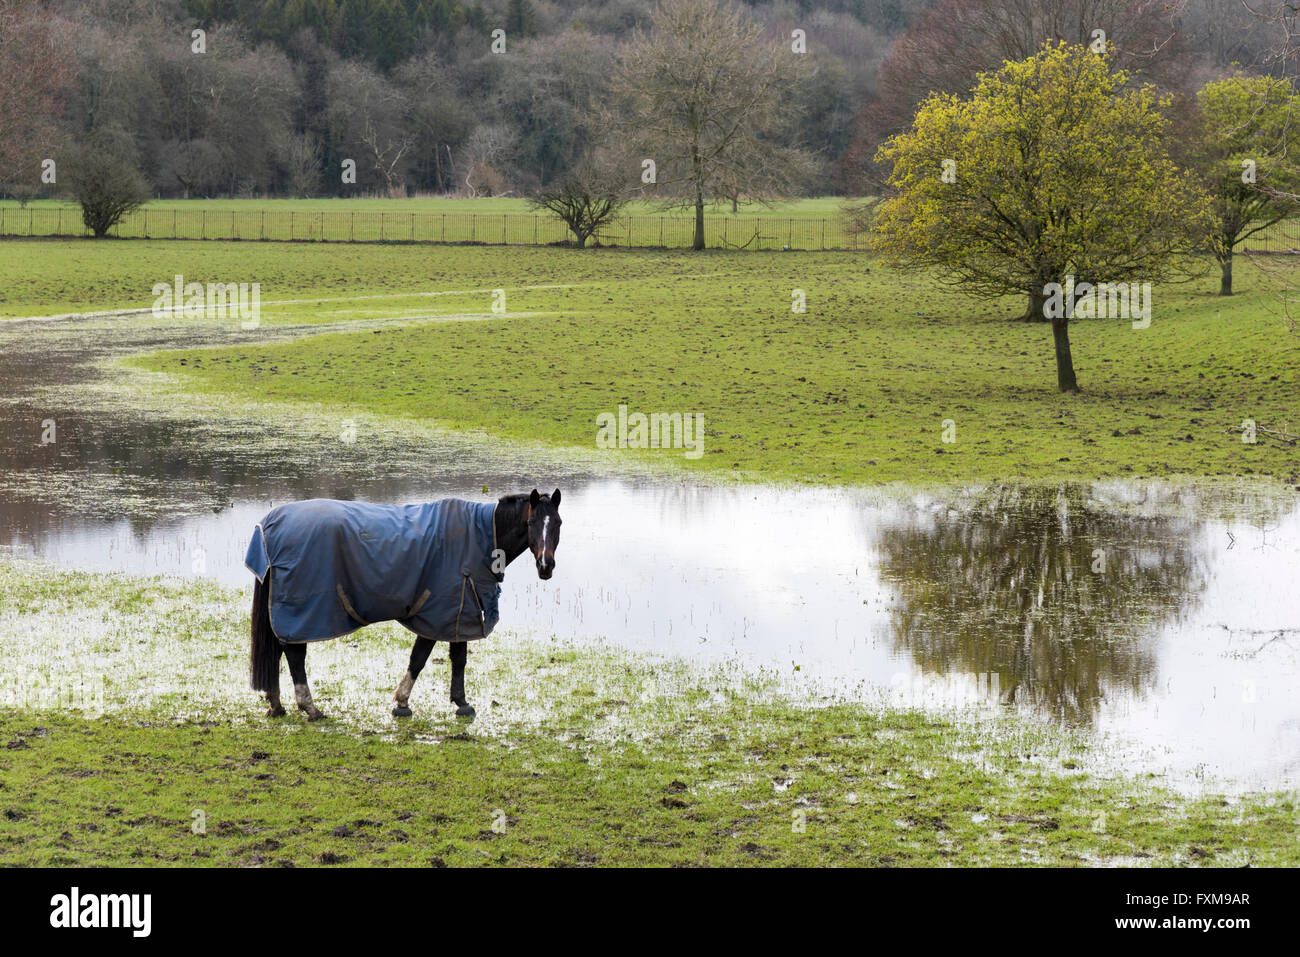 Cavallo bagnato immagini e fotografie stock ad alta risoluzione - Alamy